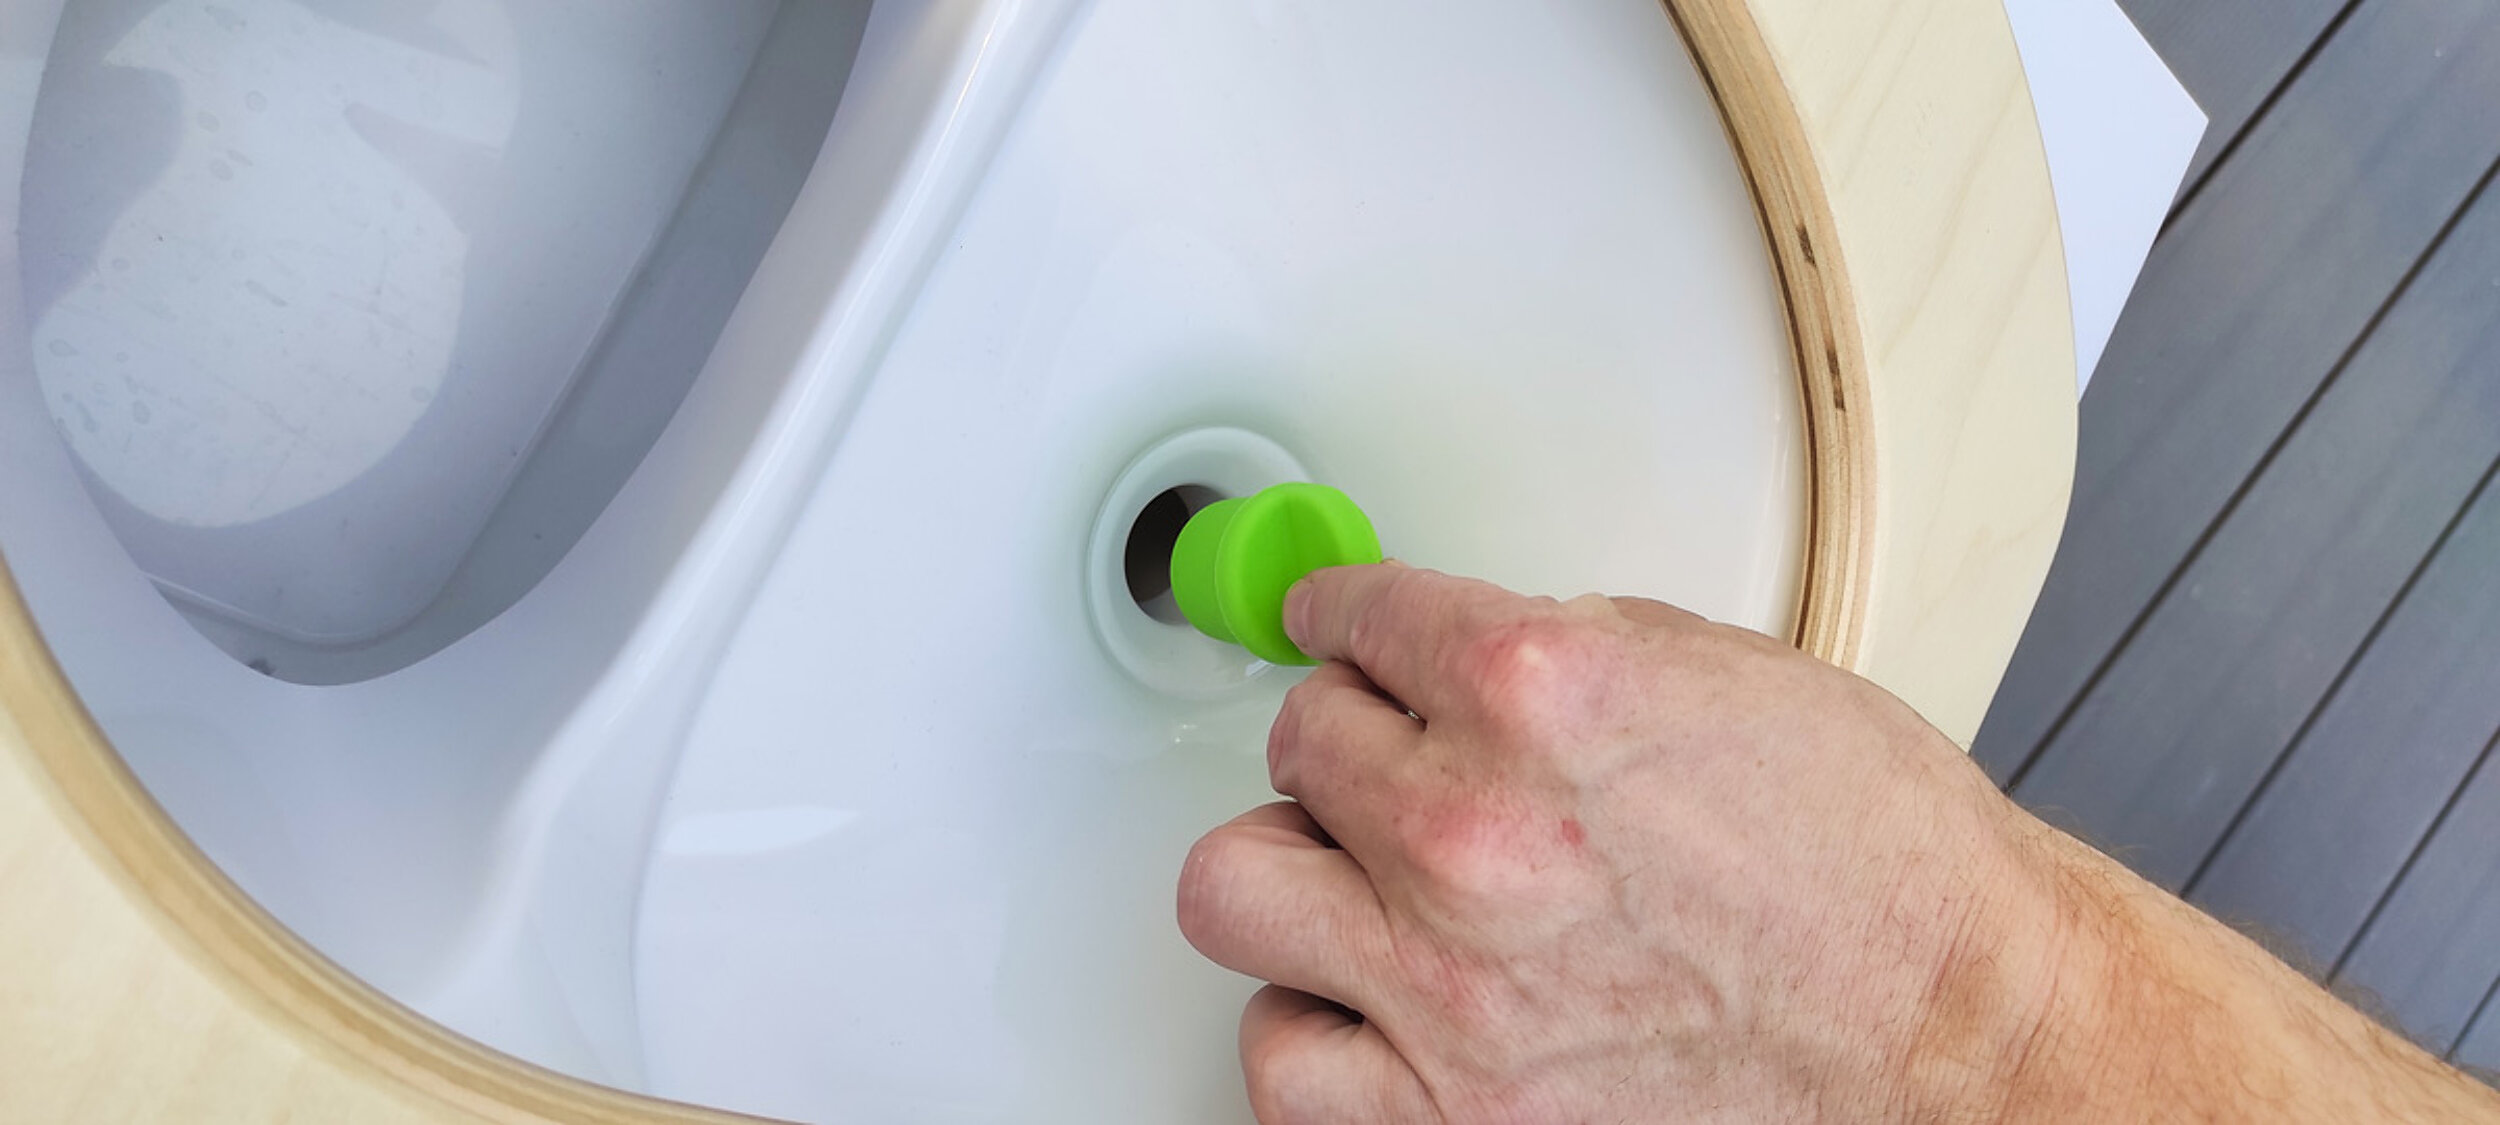 Mit unserem Spillguard Plug wird die Urinkanisteröffnung deiner Trockentrenntoilette zuverlässig verschlossen